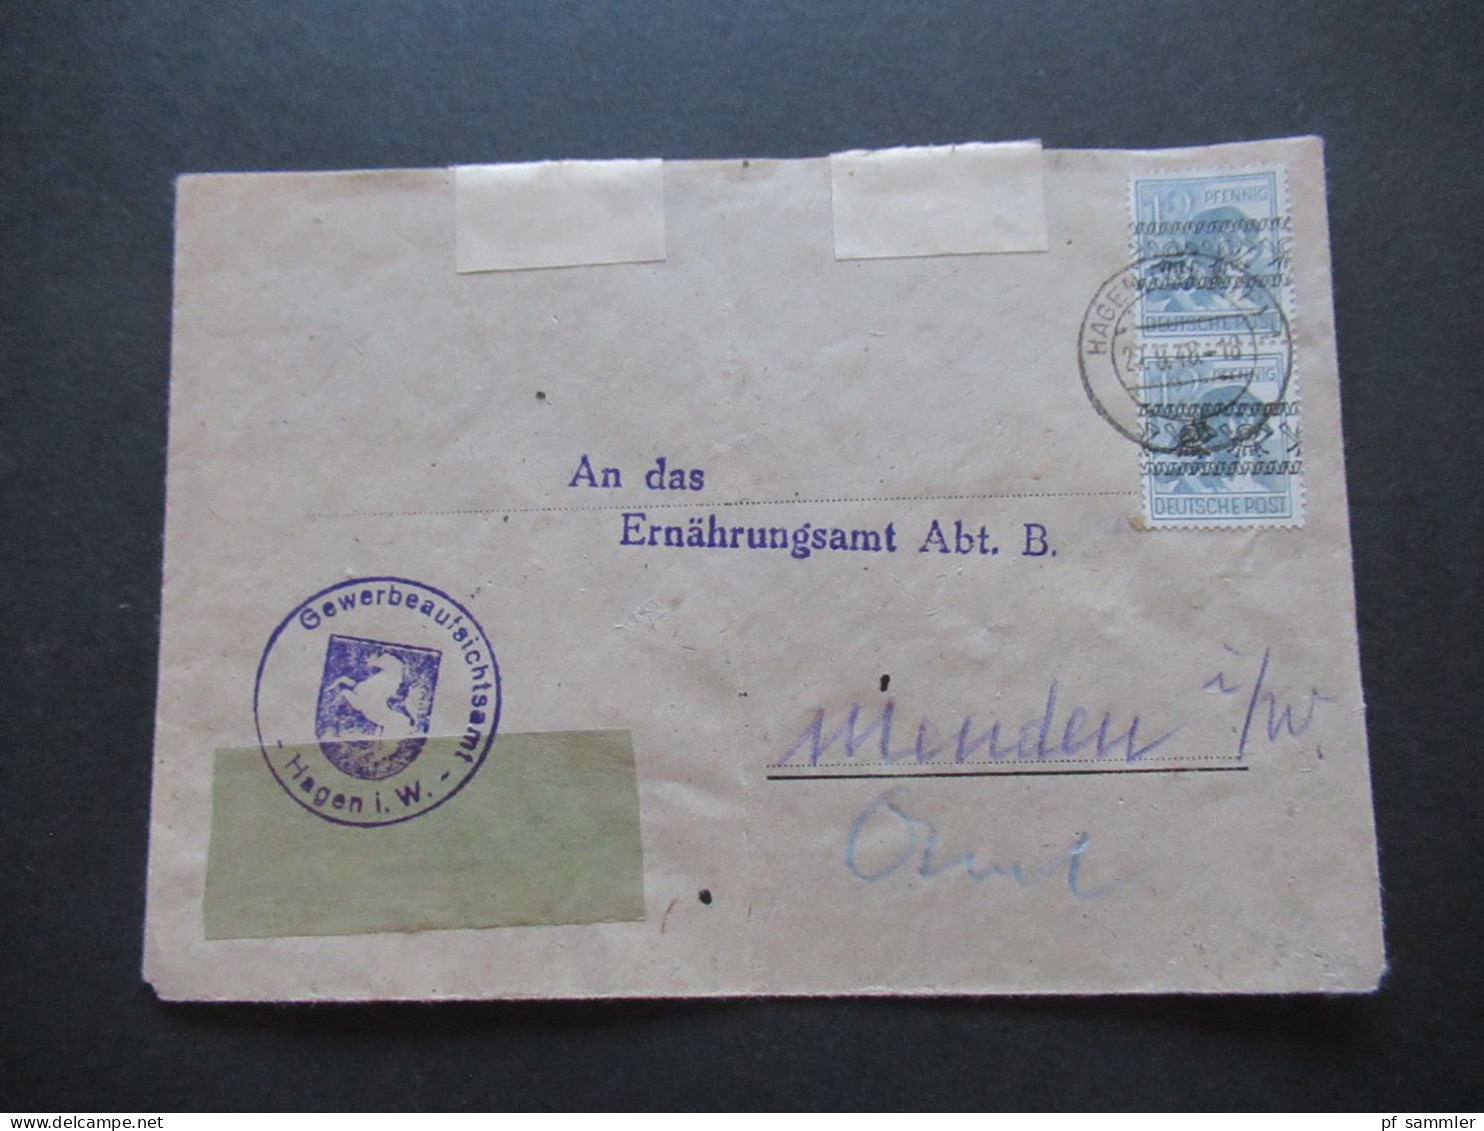 27.8.1948 Bizone Nr.40 I (2) MeF Stempel Gewerbeaufsichtsamt Hagen In Westfalen An Das Ernährungsamt In Menden - Covers & Documents